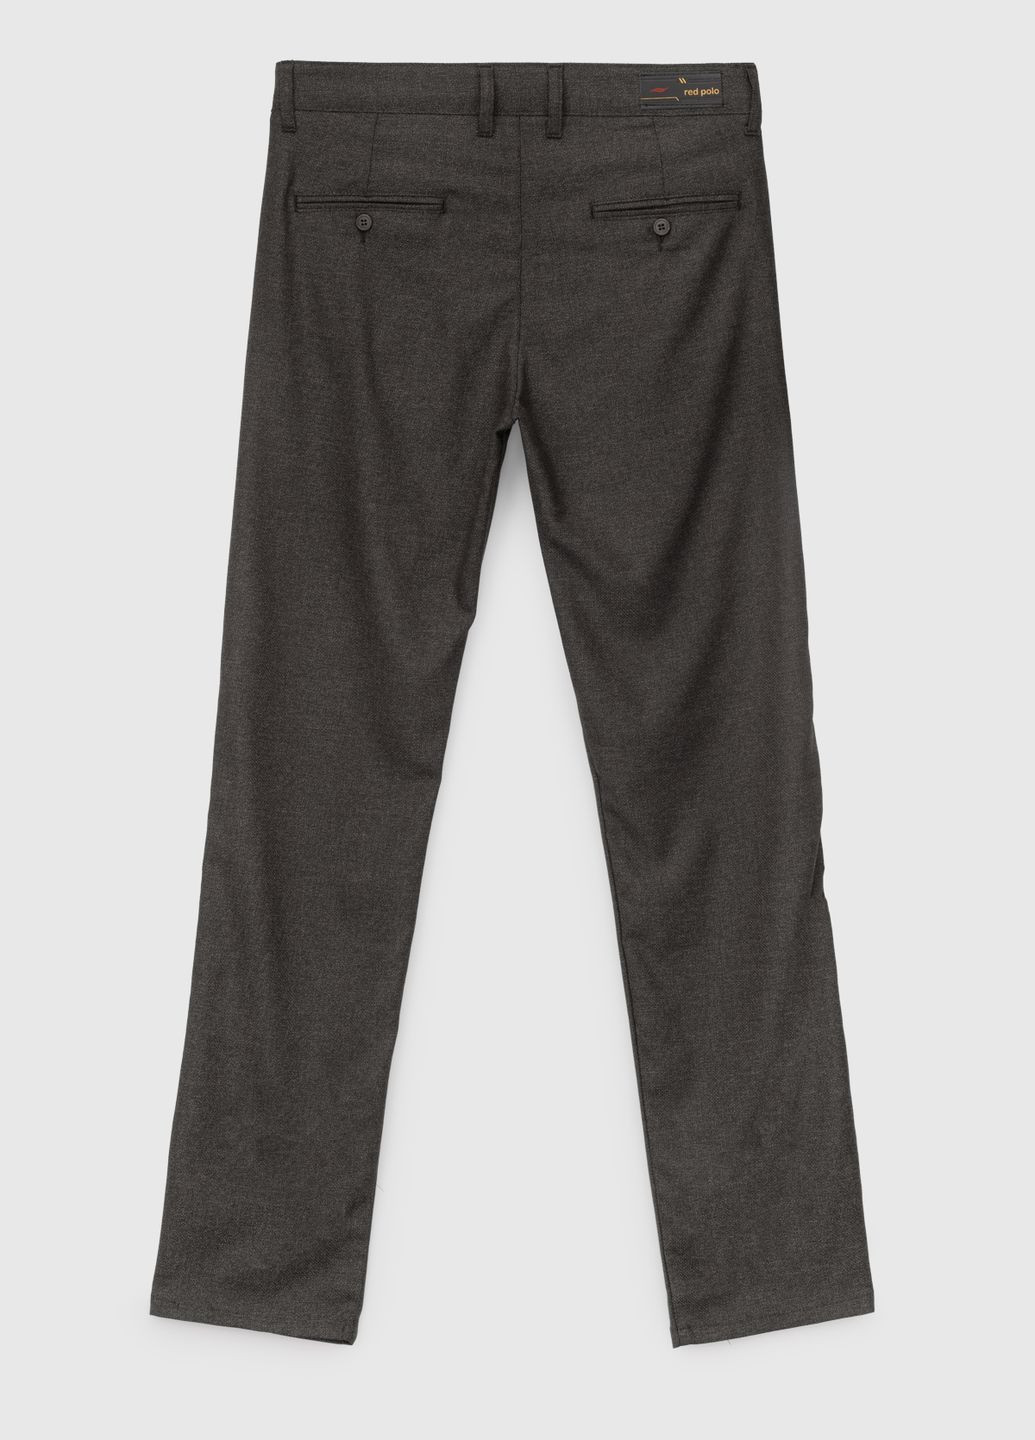 Темно-серые повседневный демисезонные брюки Redpolo